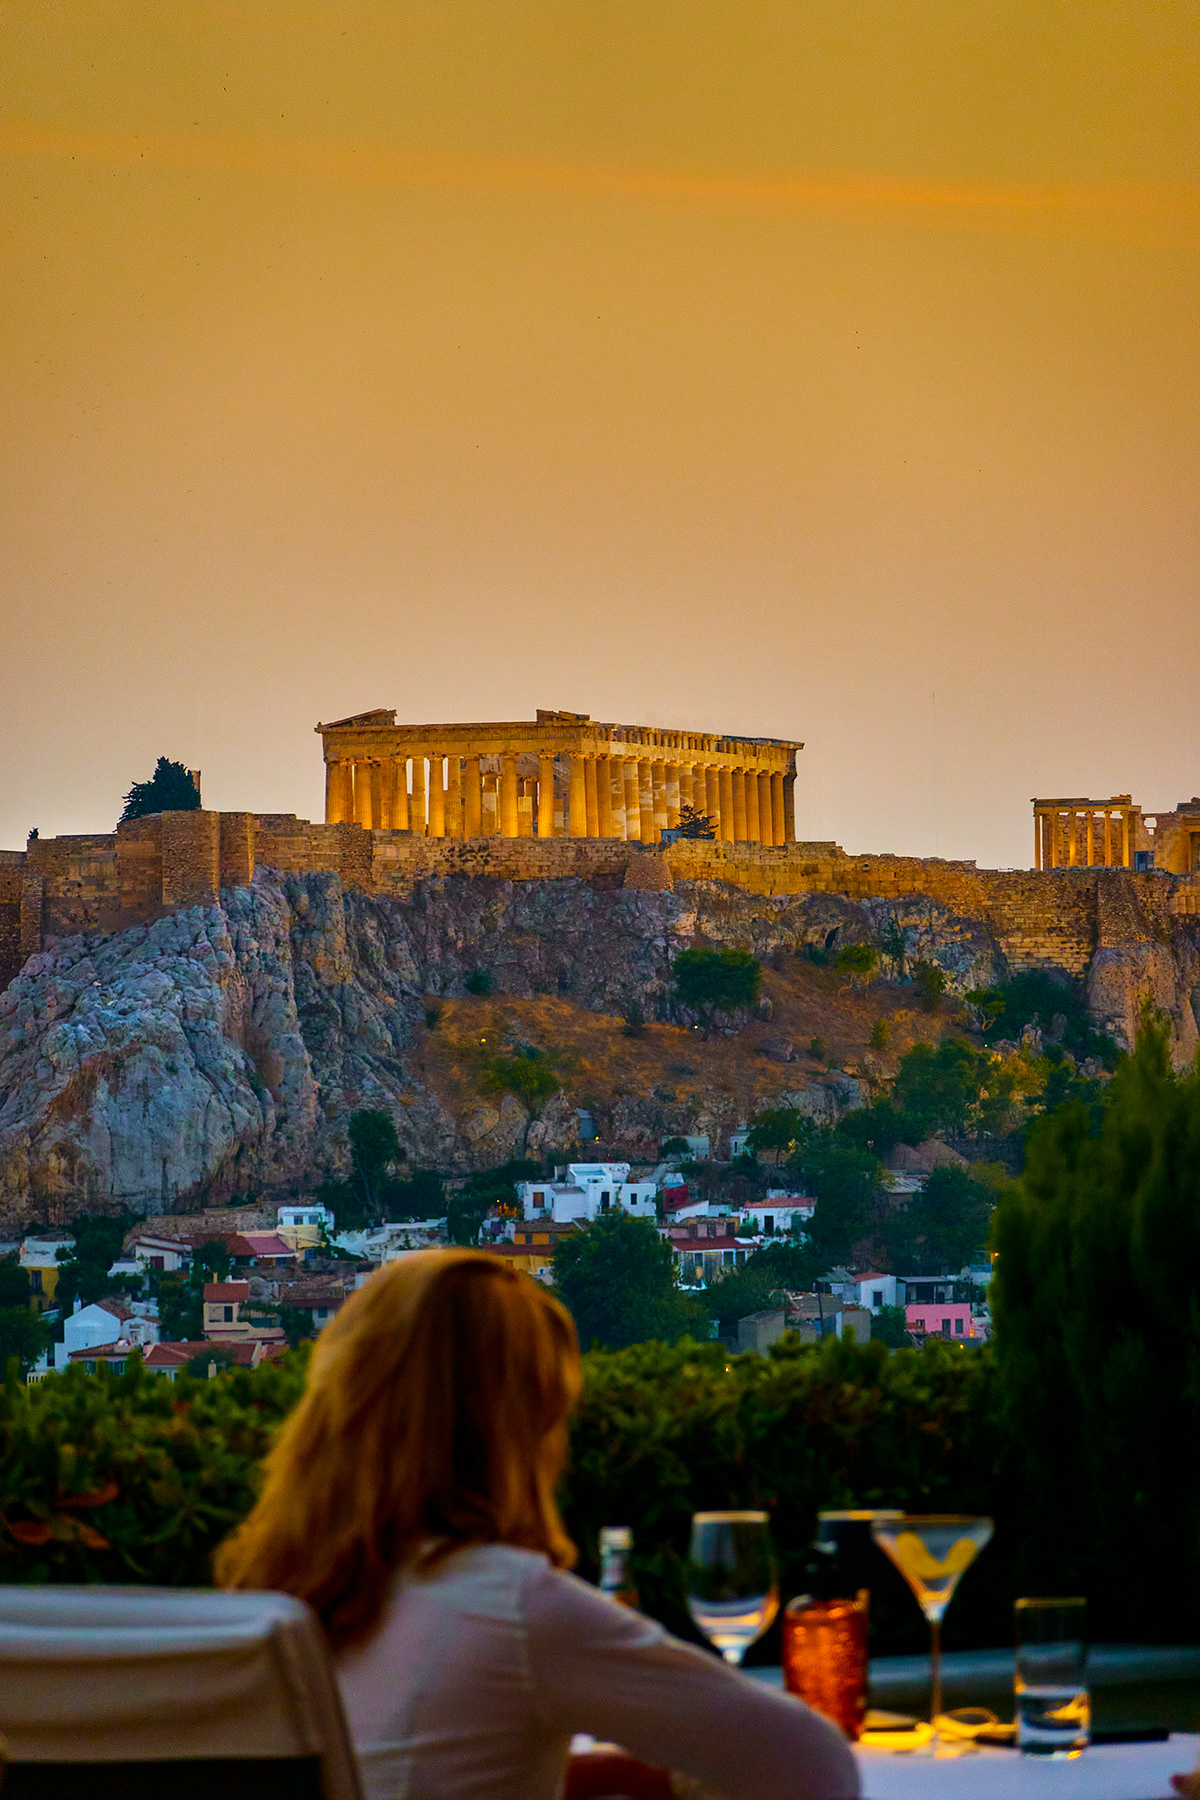 Sunset overlooking the Parthenon Greece